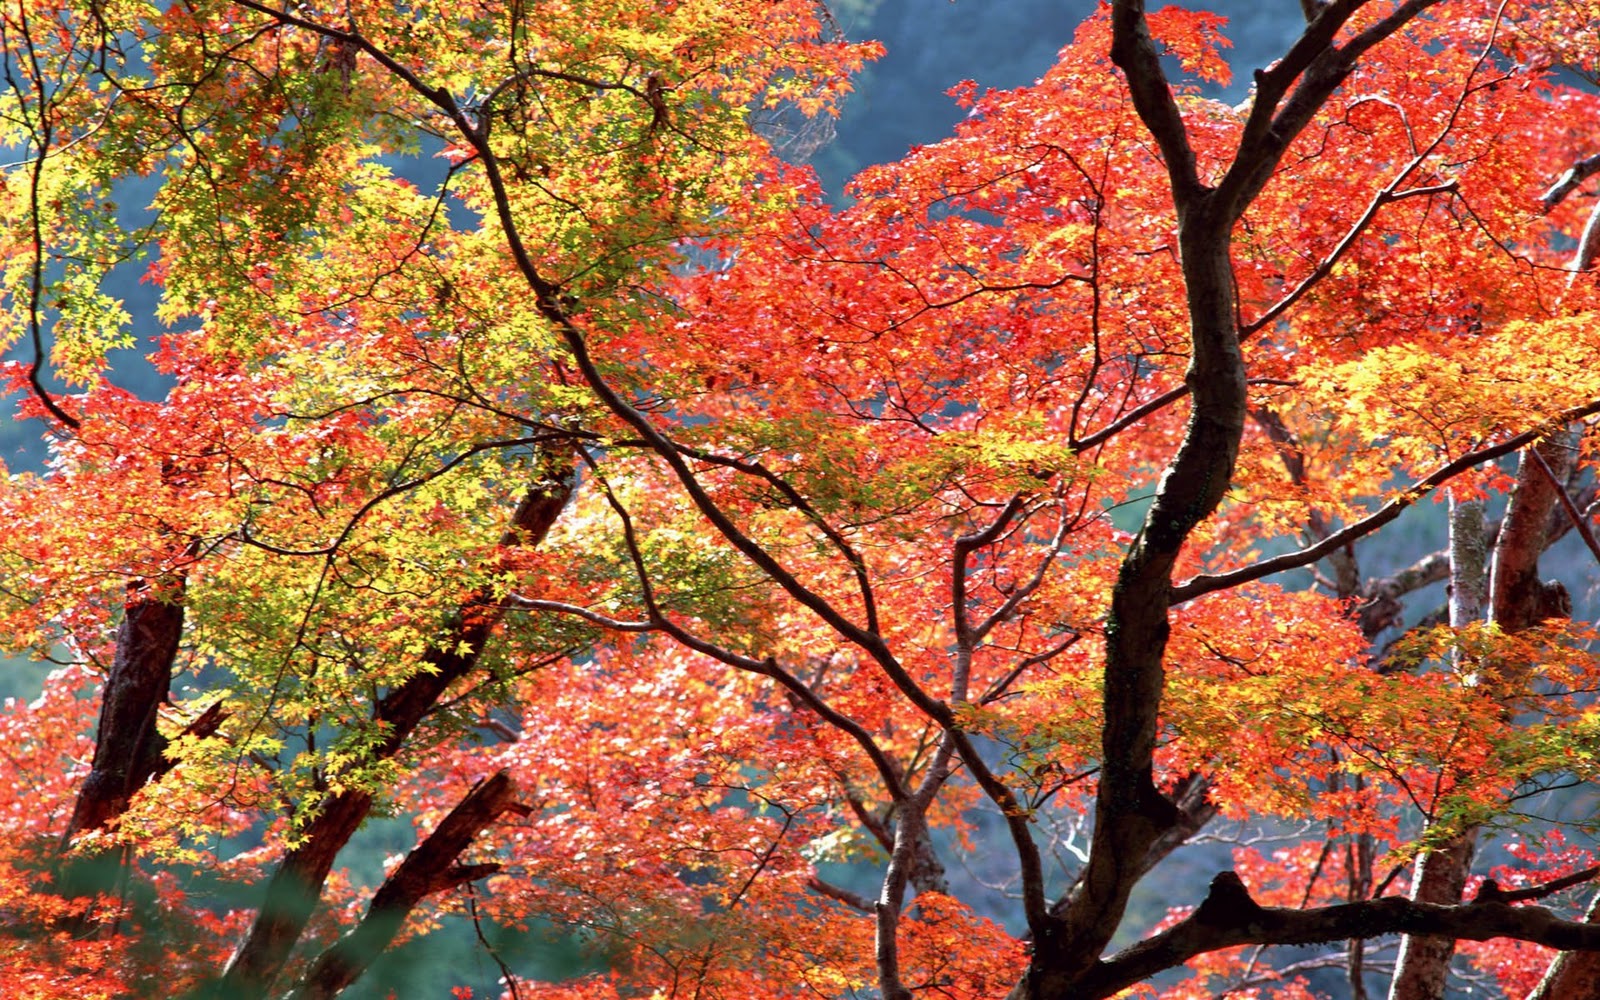 http://2.bp.blogspot.com/-yaA4bONuOmw/TwH27H_pWQI/AAAAAAAAbT4/H2nynRIdUo4/s1600/Autumn+Trees+HD+Wallpapers.jpg